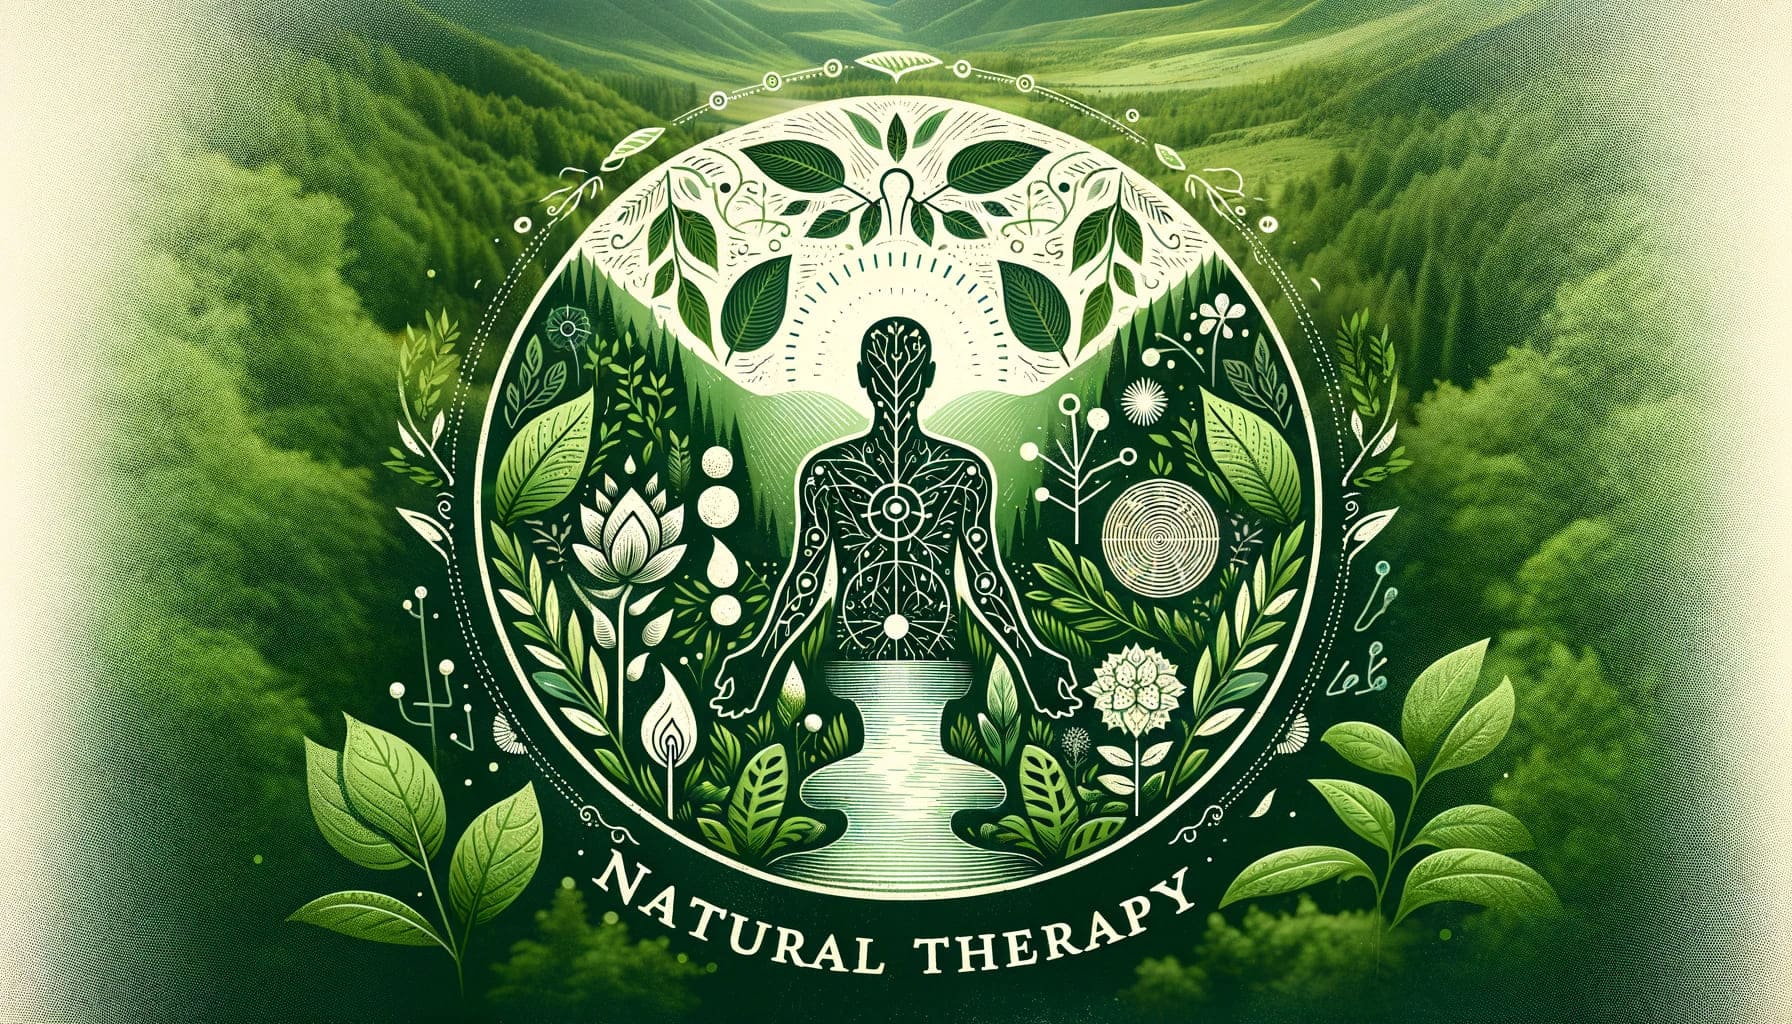 こちらが体（Body）、心（Mind）、精神（Spirit）をテーマにした自然療法のイメージです。この画像は緑豊かな自然を背景にしており、自然療法の本質である癒しと健康を象徴しています。穏やかで調和のとれたデザインは、身体、心、精神のつながりとバランスを強調し、自然の治癒力を表しています。